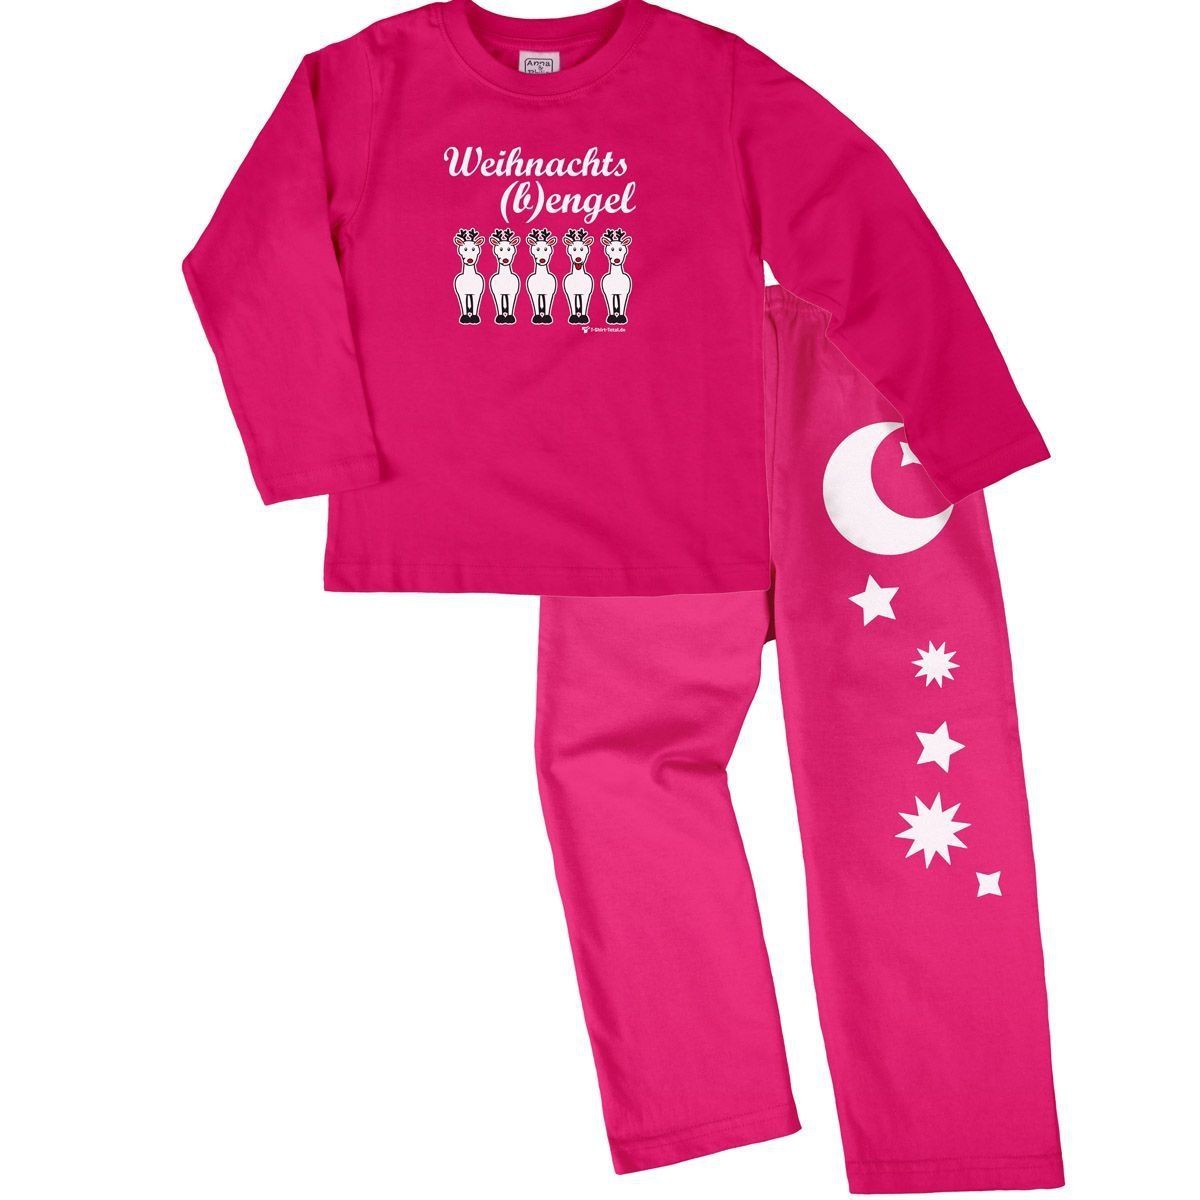 Weihnachtsbengel Pyjama Set pink / pink 92